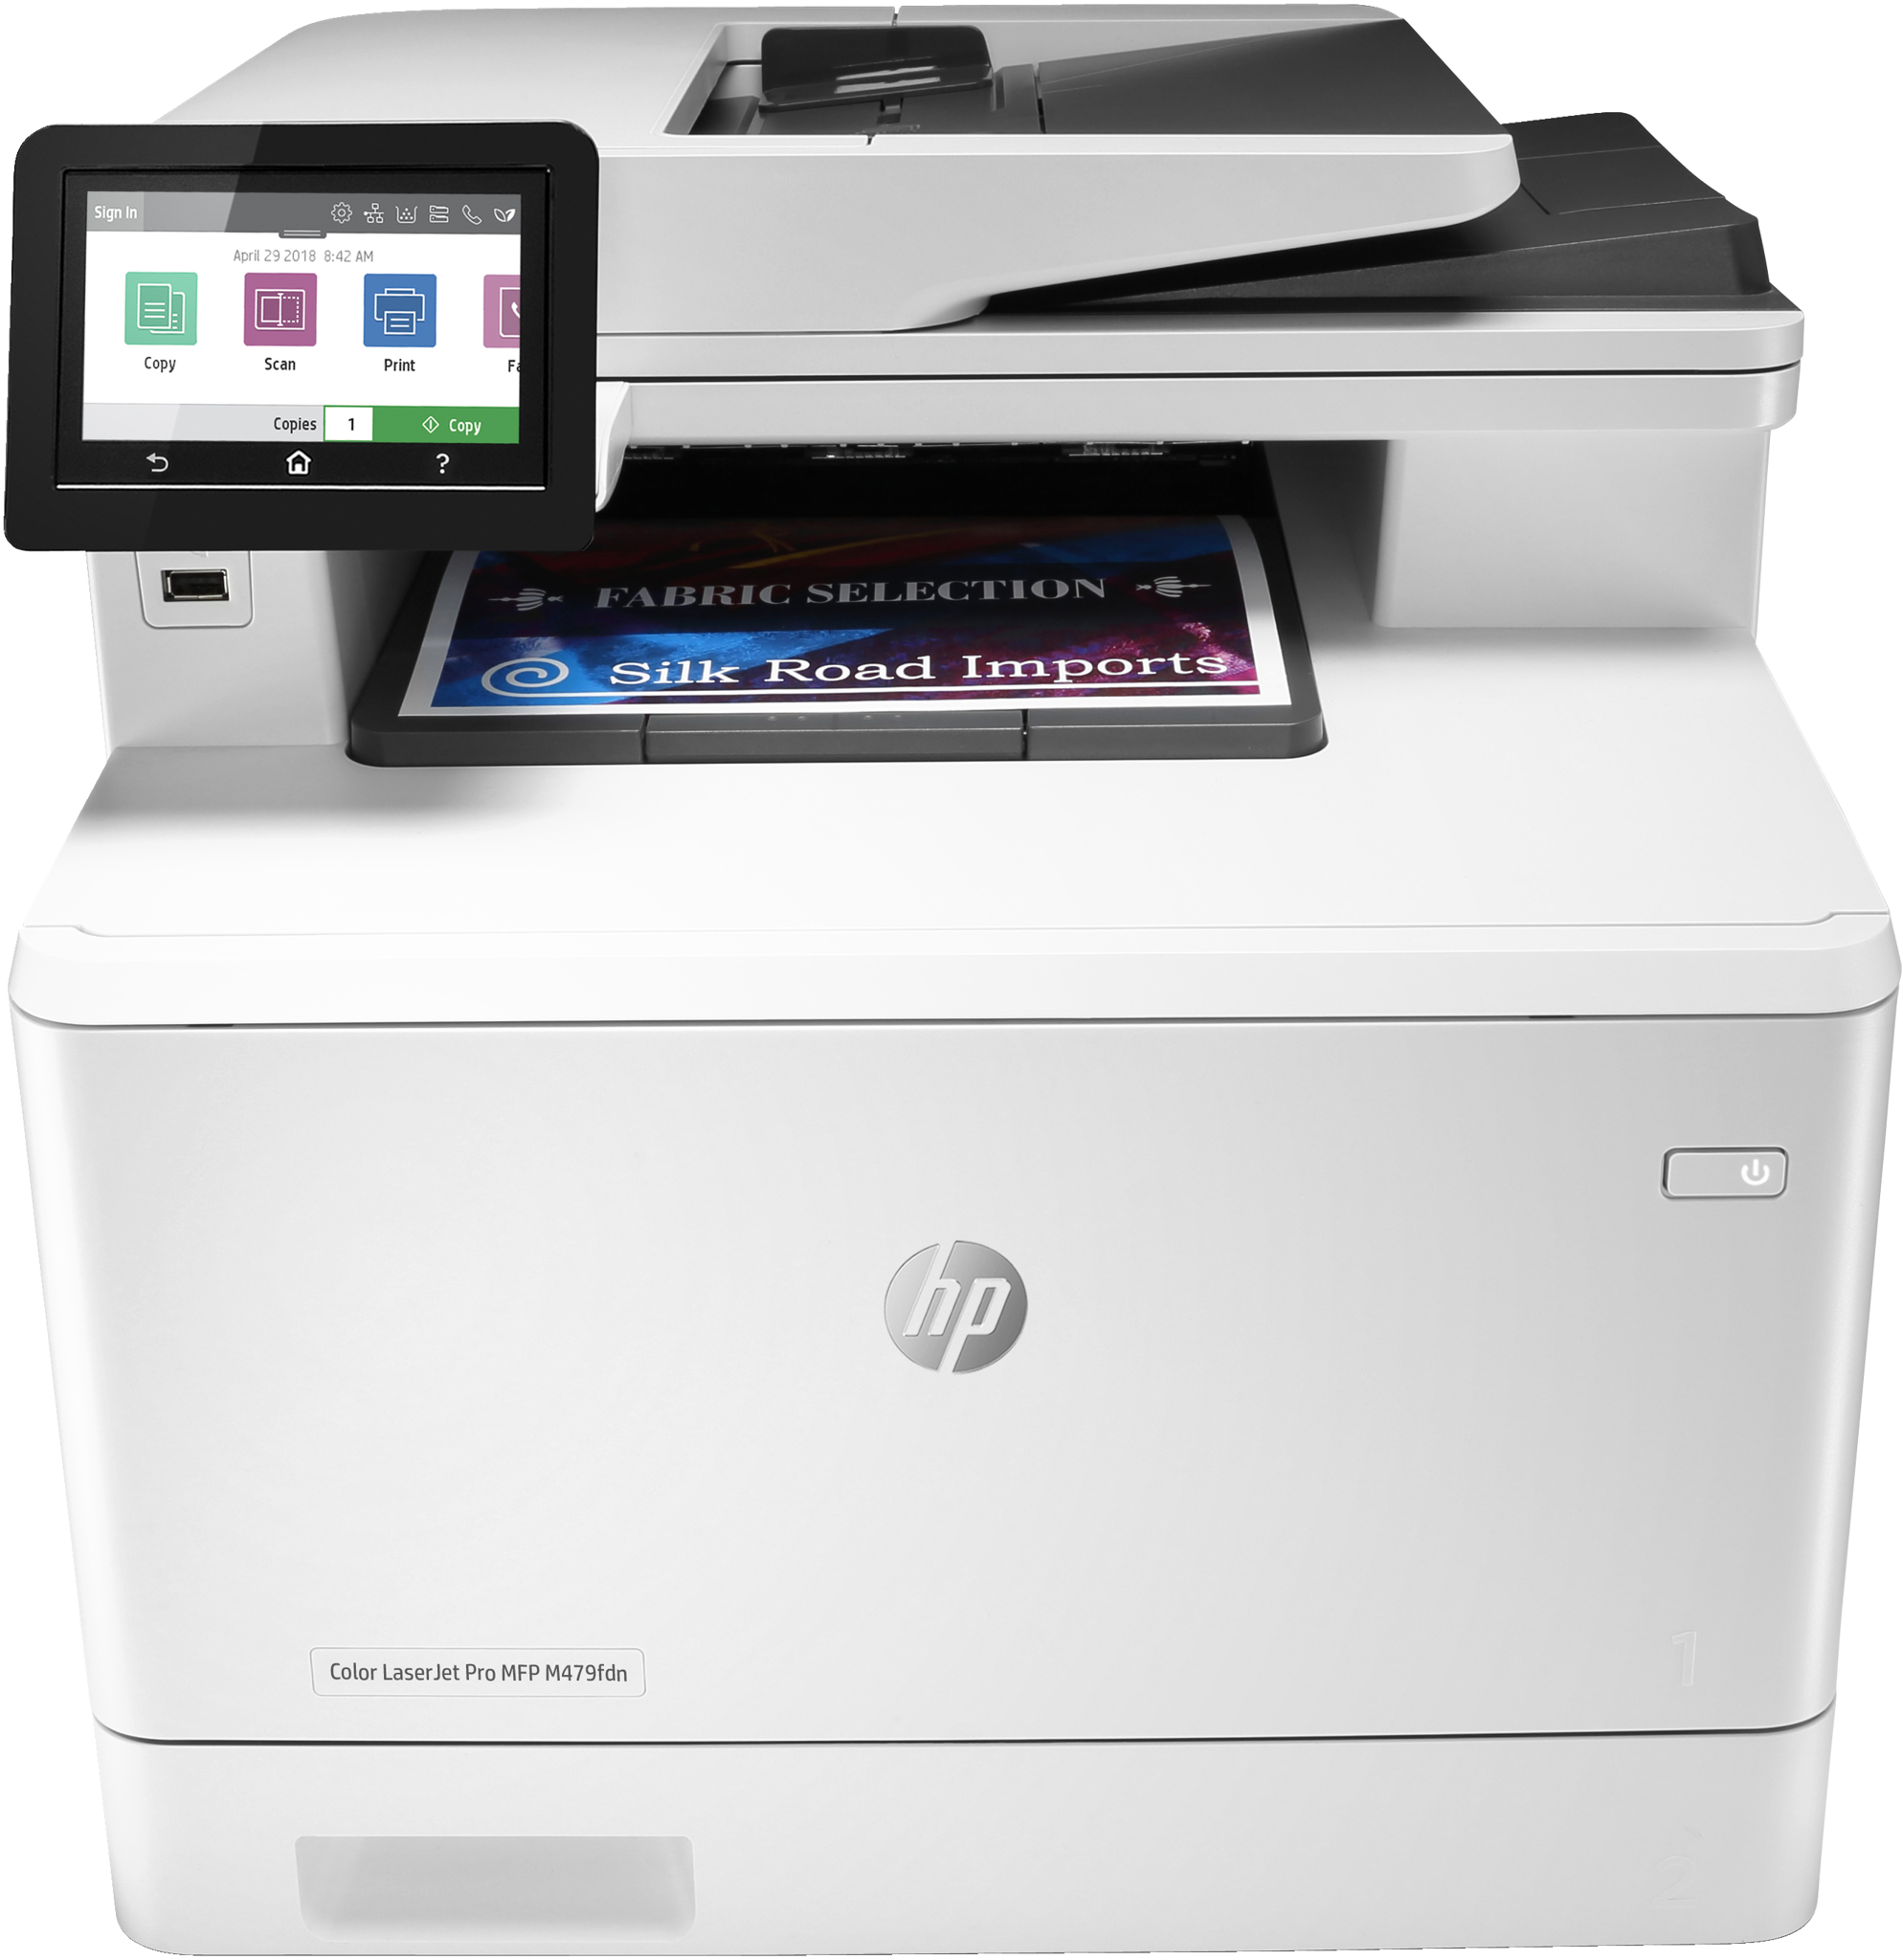 Bild von HP Color LaserJet Pro MFP M479fdn - Drucken - Kopieren - Scannen - Faxen - Mailen - Scannen an E-Mail/PDF; Beidseitiger Druck; Automatische - geglättete Dokumentenzuführung (50 Blatt) - Laser - Farbdruck - 600 x 600 DPI - Farbkopieren - A4 - Grau - Weiß